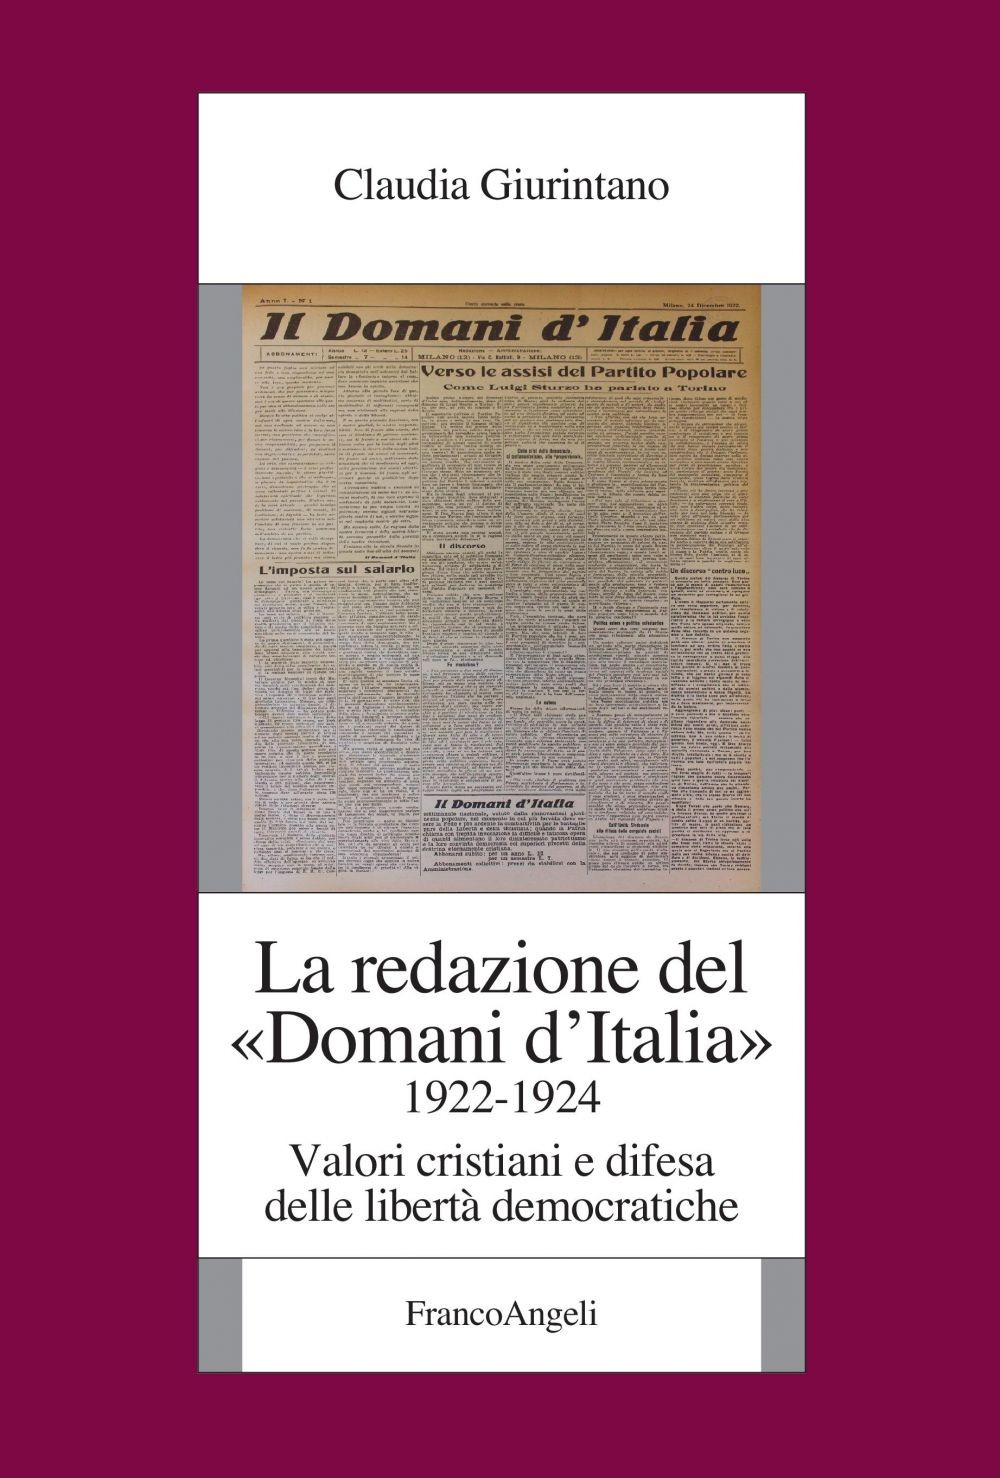 La redazione del "Domani d'Italia" (1922-1924) - Librerie.coop